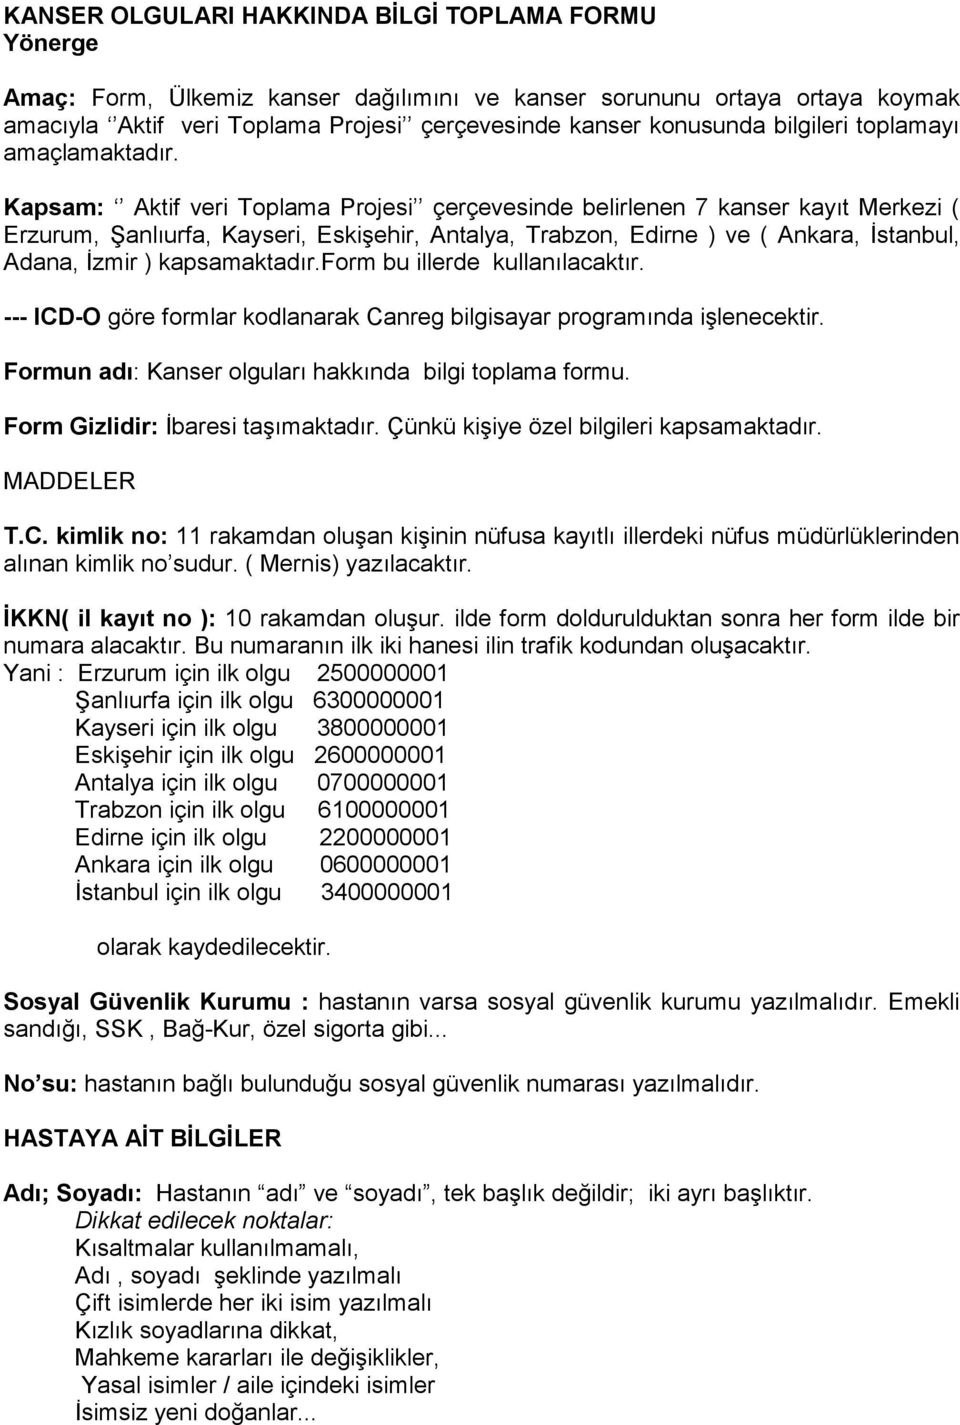 Kapsam: Aktif veri Toplama Projesi çerçevesinde belirlenen 7 kanser kayıt Merkezi ( Erzurum, Şanlıurfa, Kayseri, Eskişehir, Antalya, Trabzon, Edirne ) ve ( Ankara, İstanbul, Adana, İzmir )